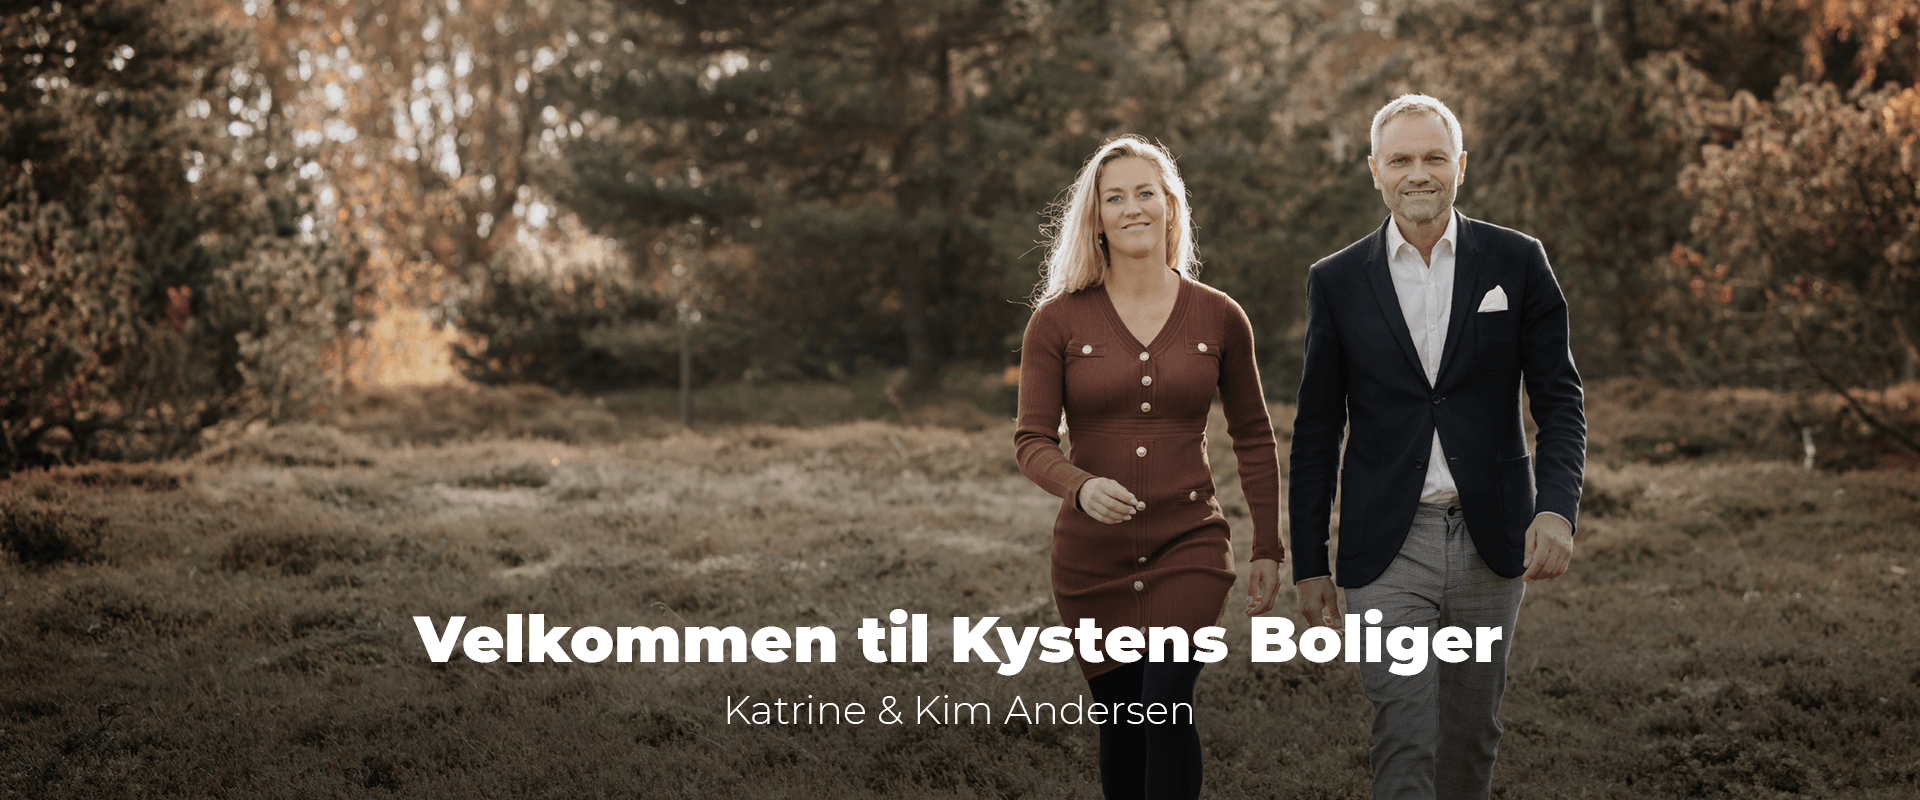 Kystens Boliger ejendomsmægler Katrine og Kim Andersen